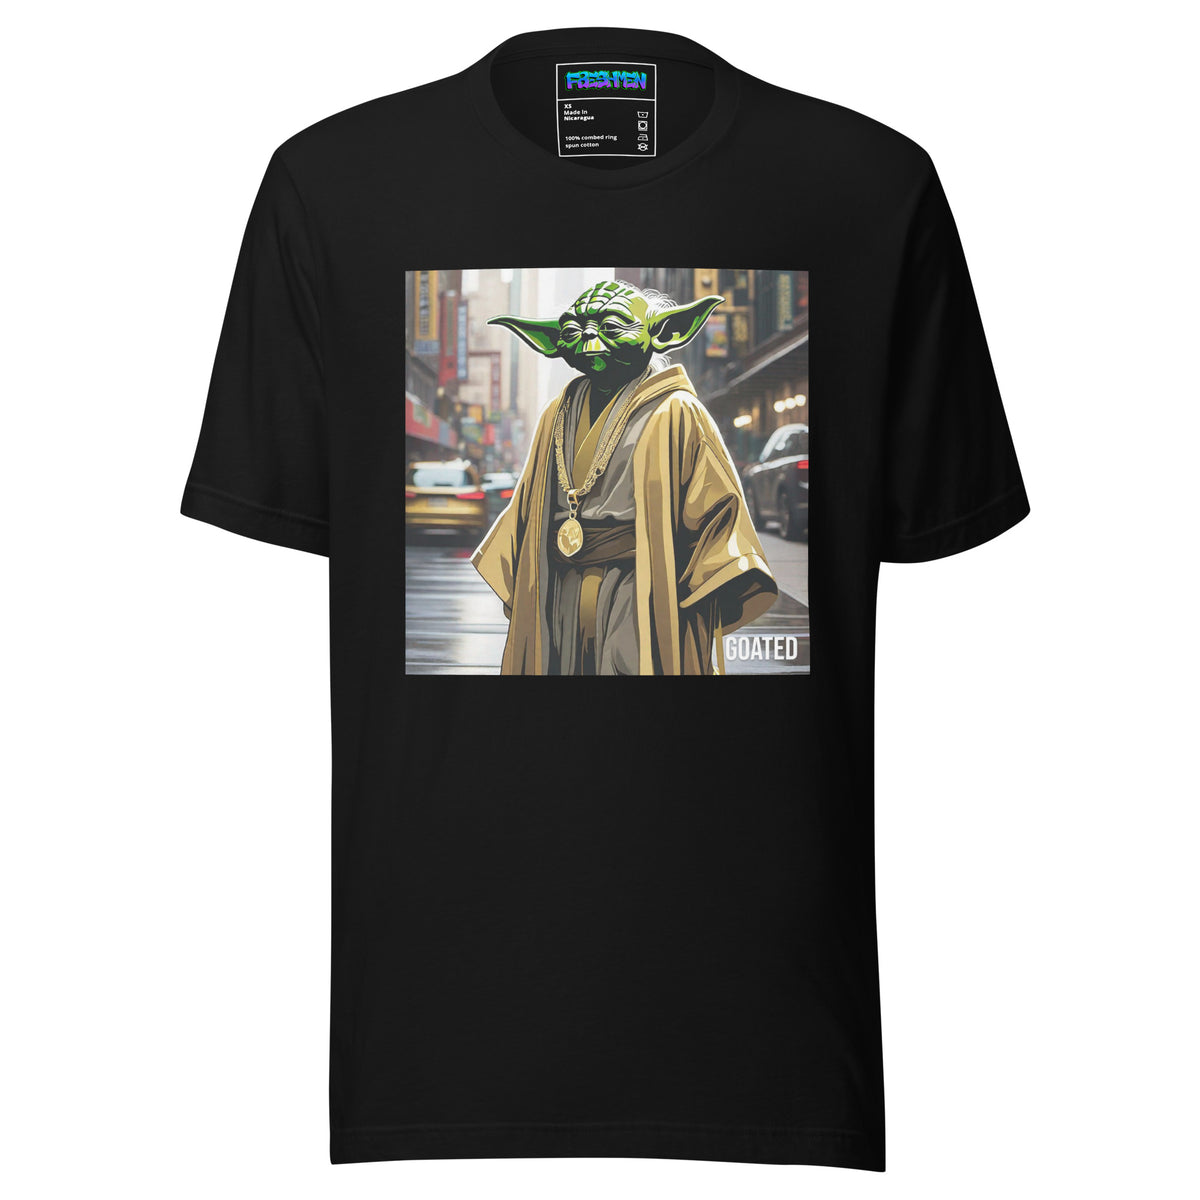 Freshmen Yoda Goated Unisex Graphic T-Shirt